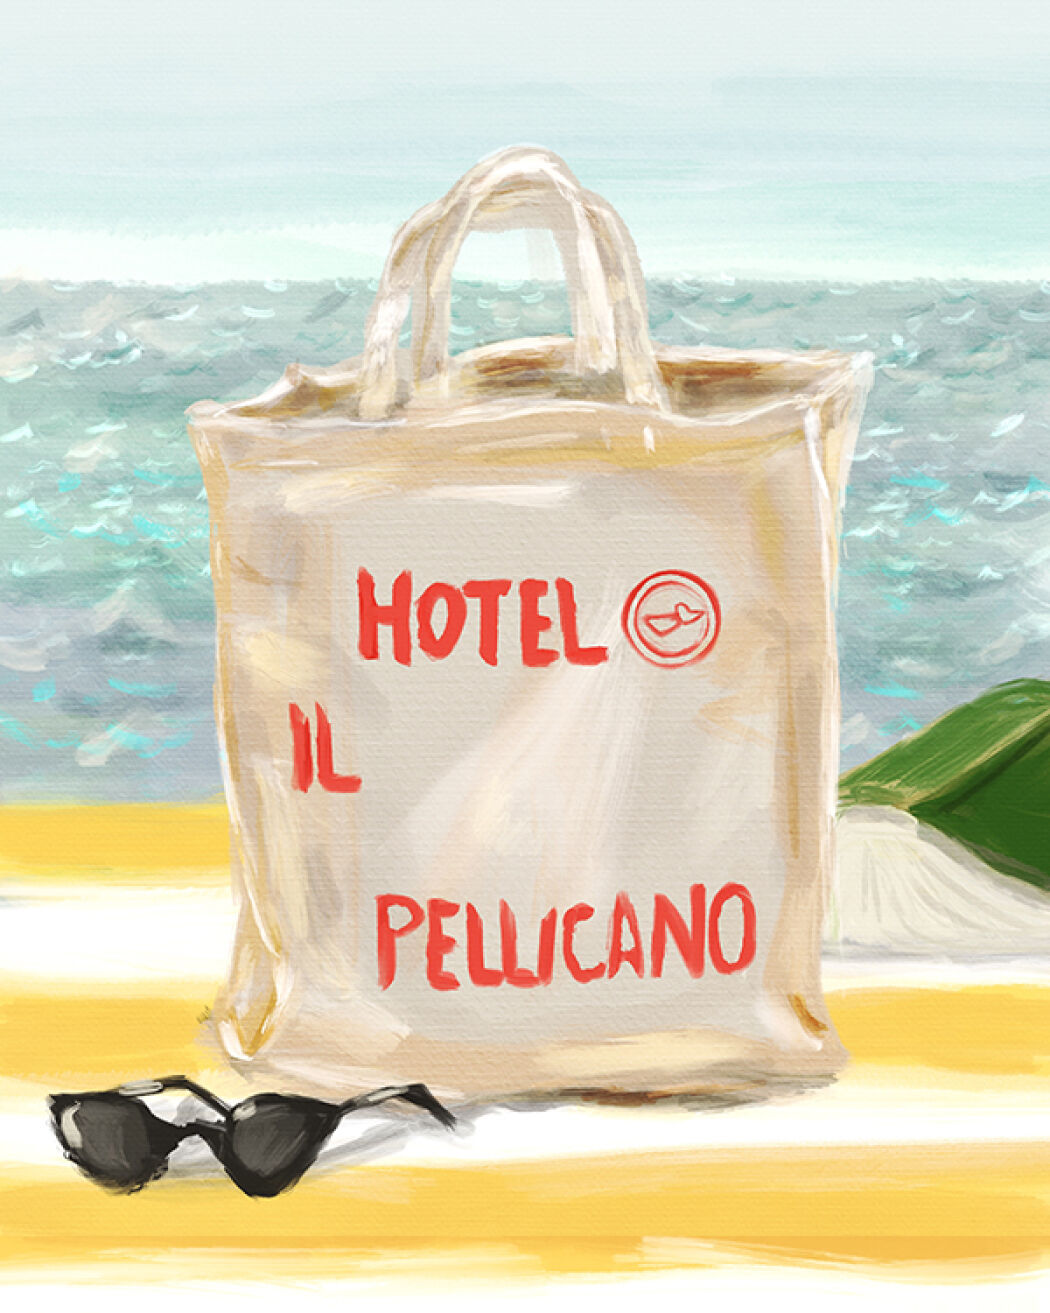 Illustrated campaign for Hotel Pelicano by Christina Gliha